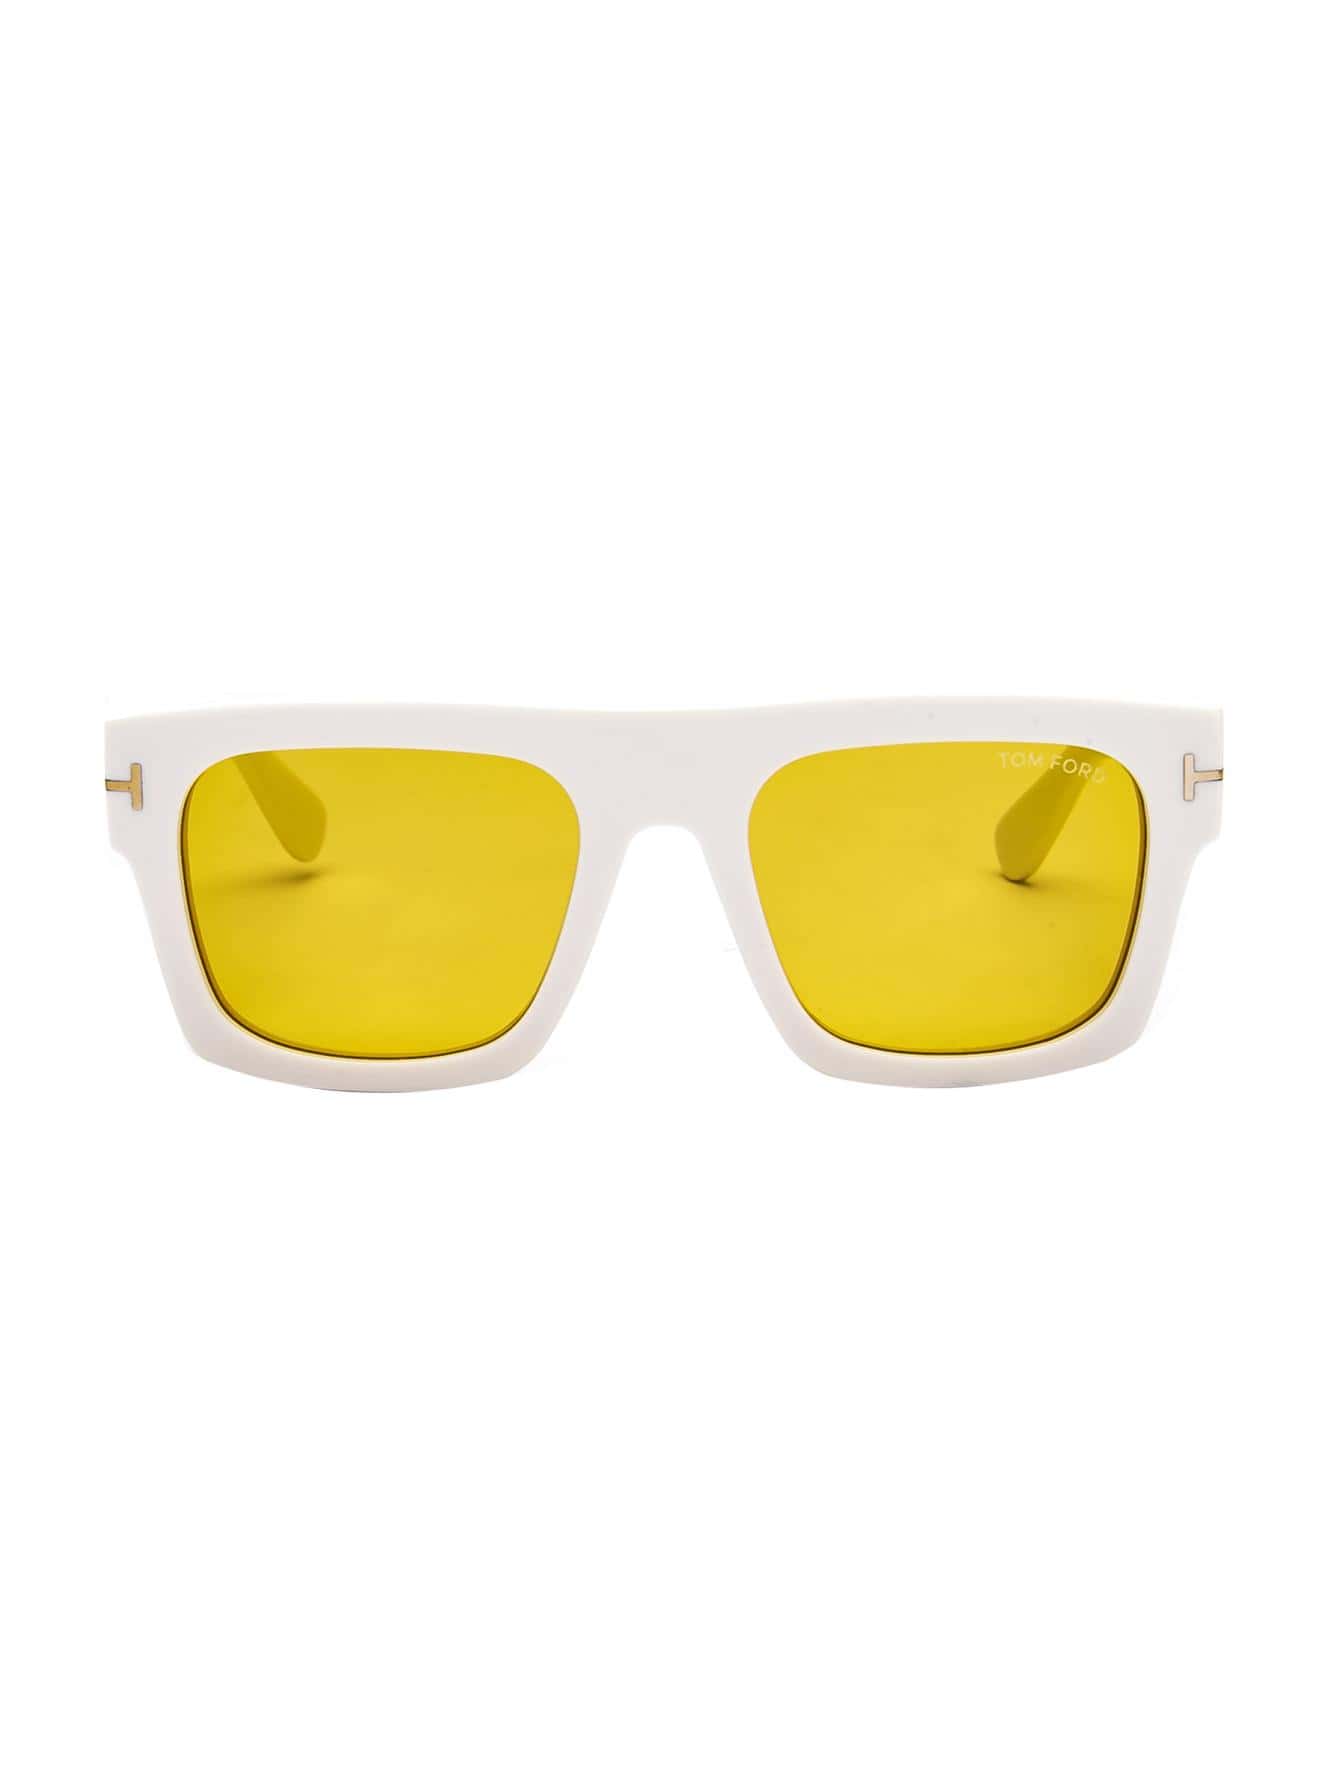 Женские солнцезащитные очки Tom Ford DECOR FT071125E, многоцветный круглые синие солнцезащитные очки havana tom ford коричневый